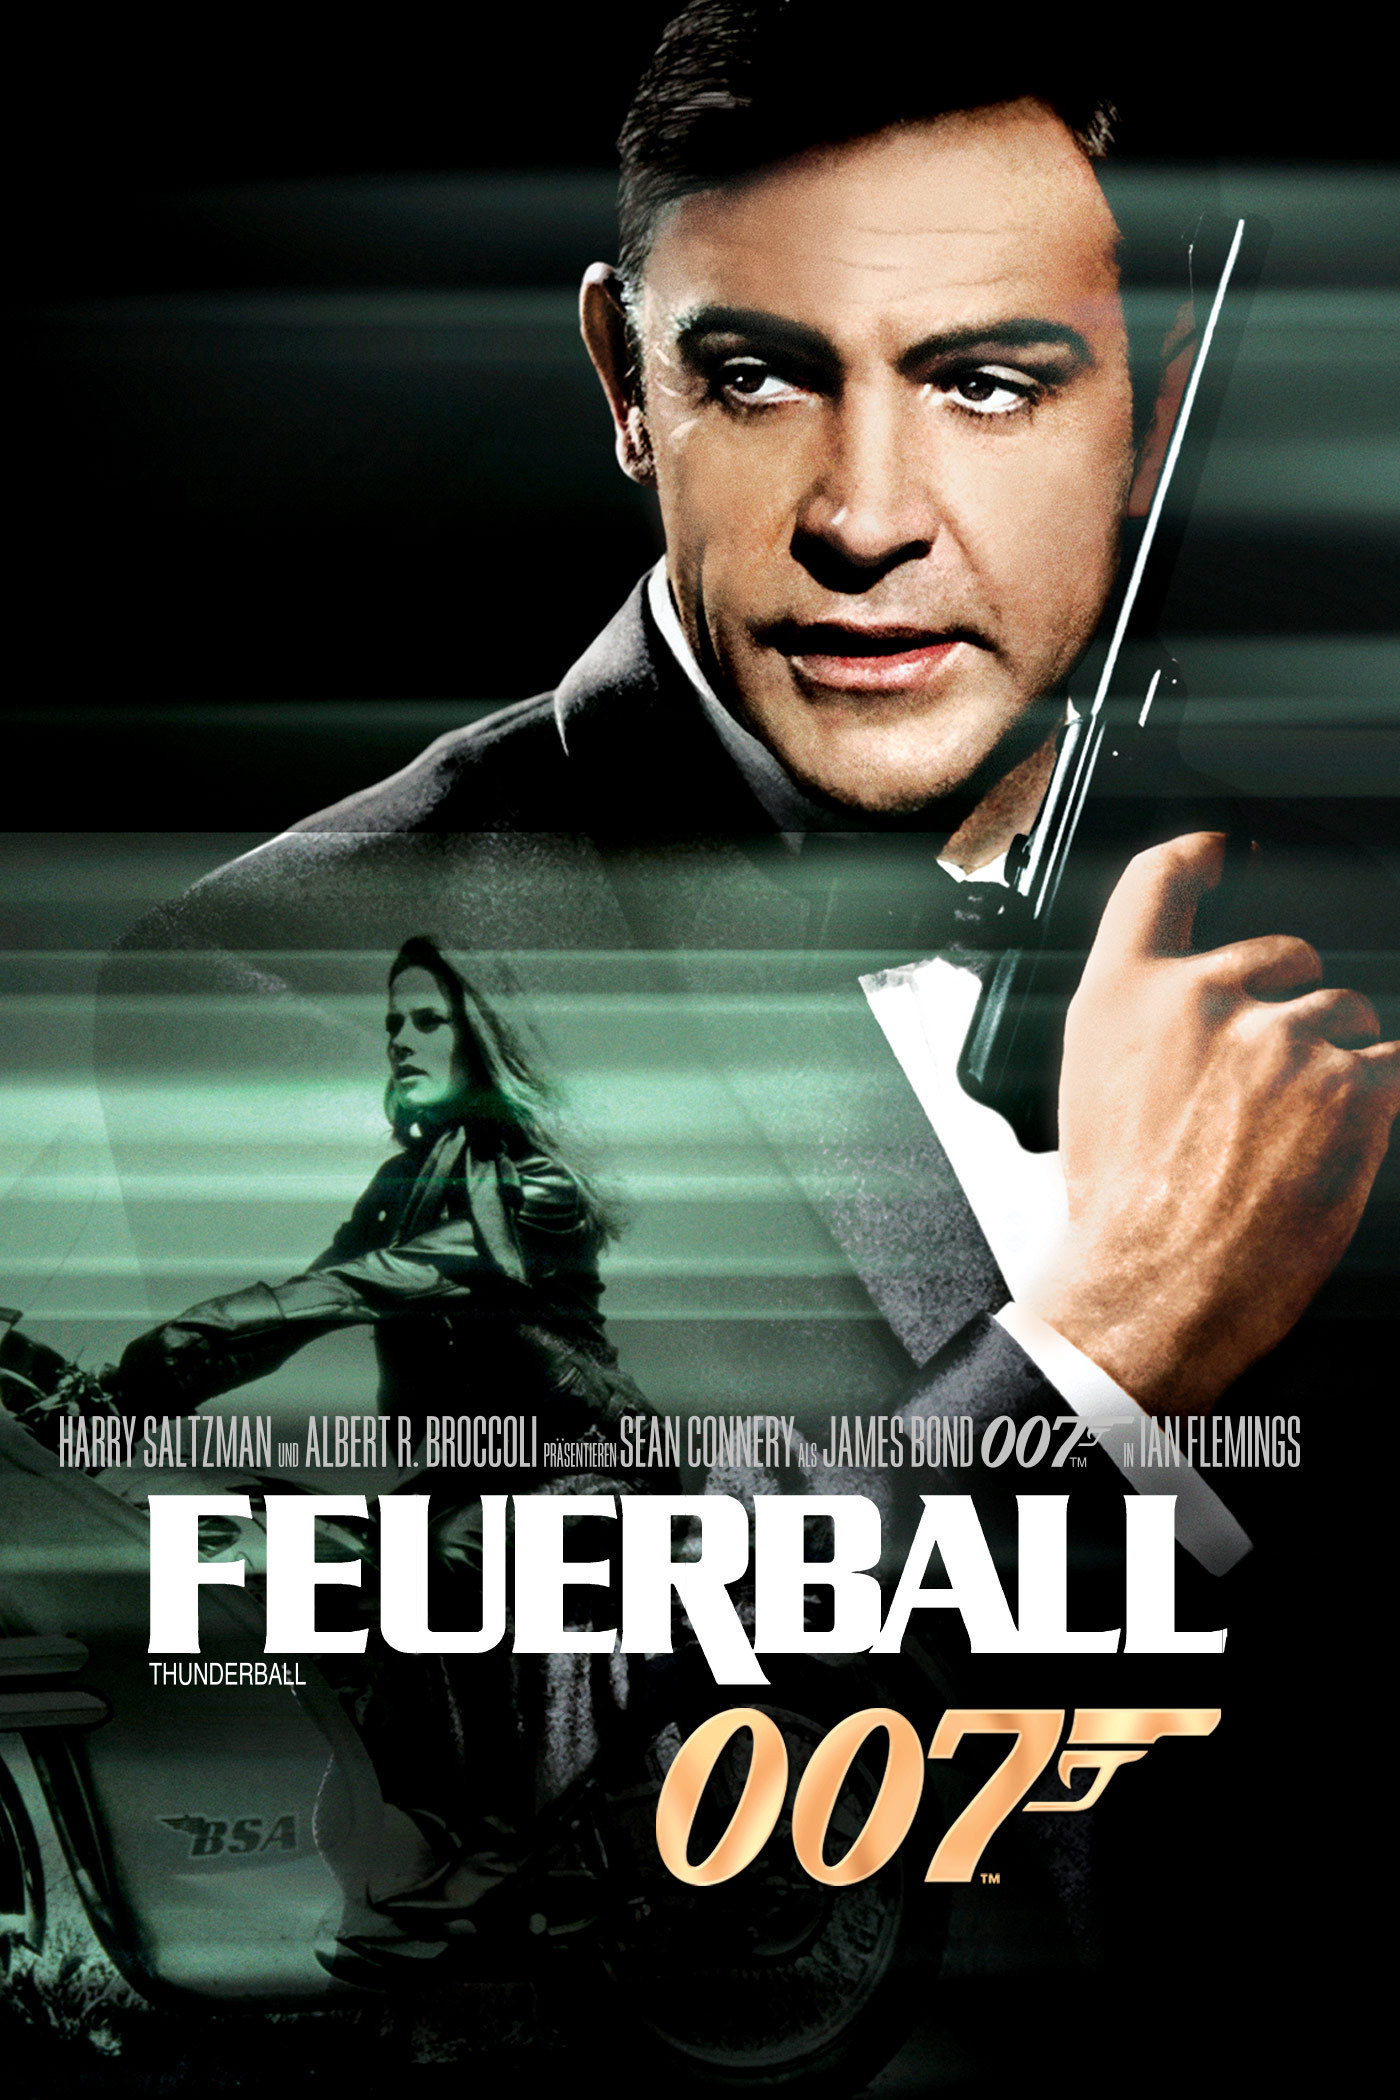 Plakat von "James Bond 007 - Feuerball"